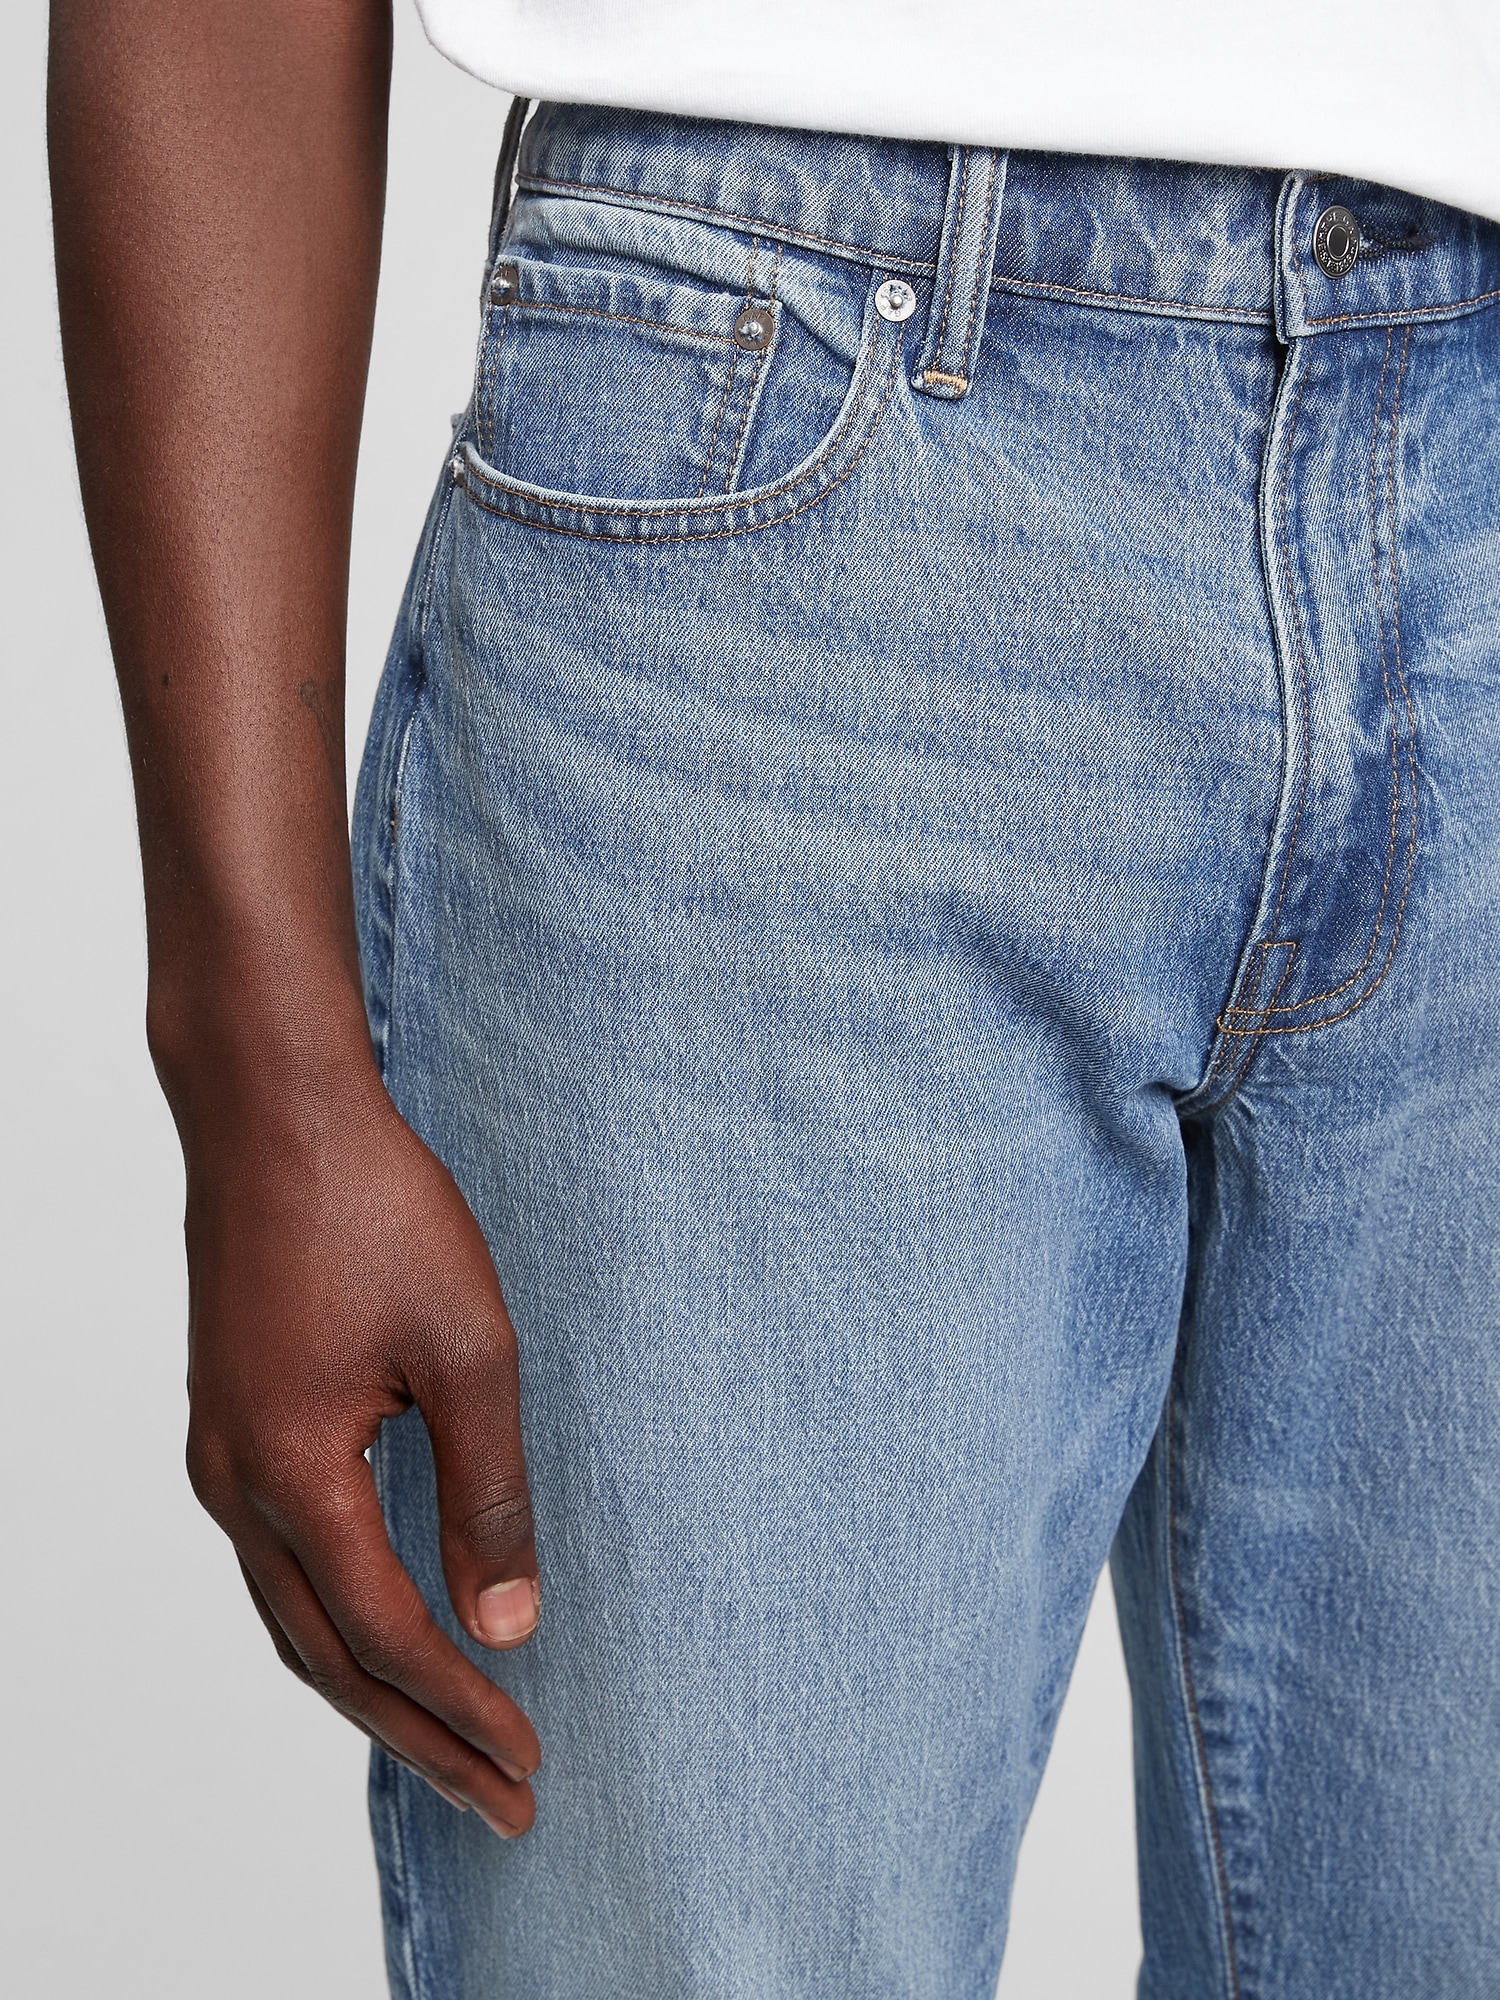 Straight Jeans in GapFlex | Gap